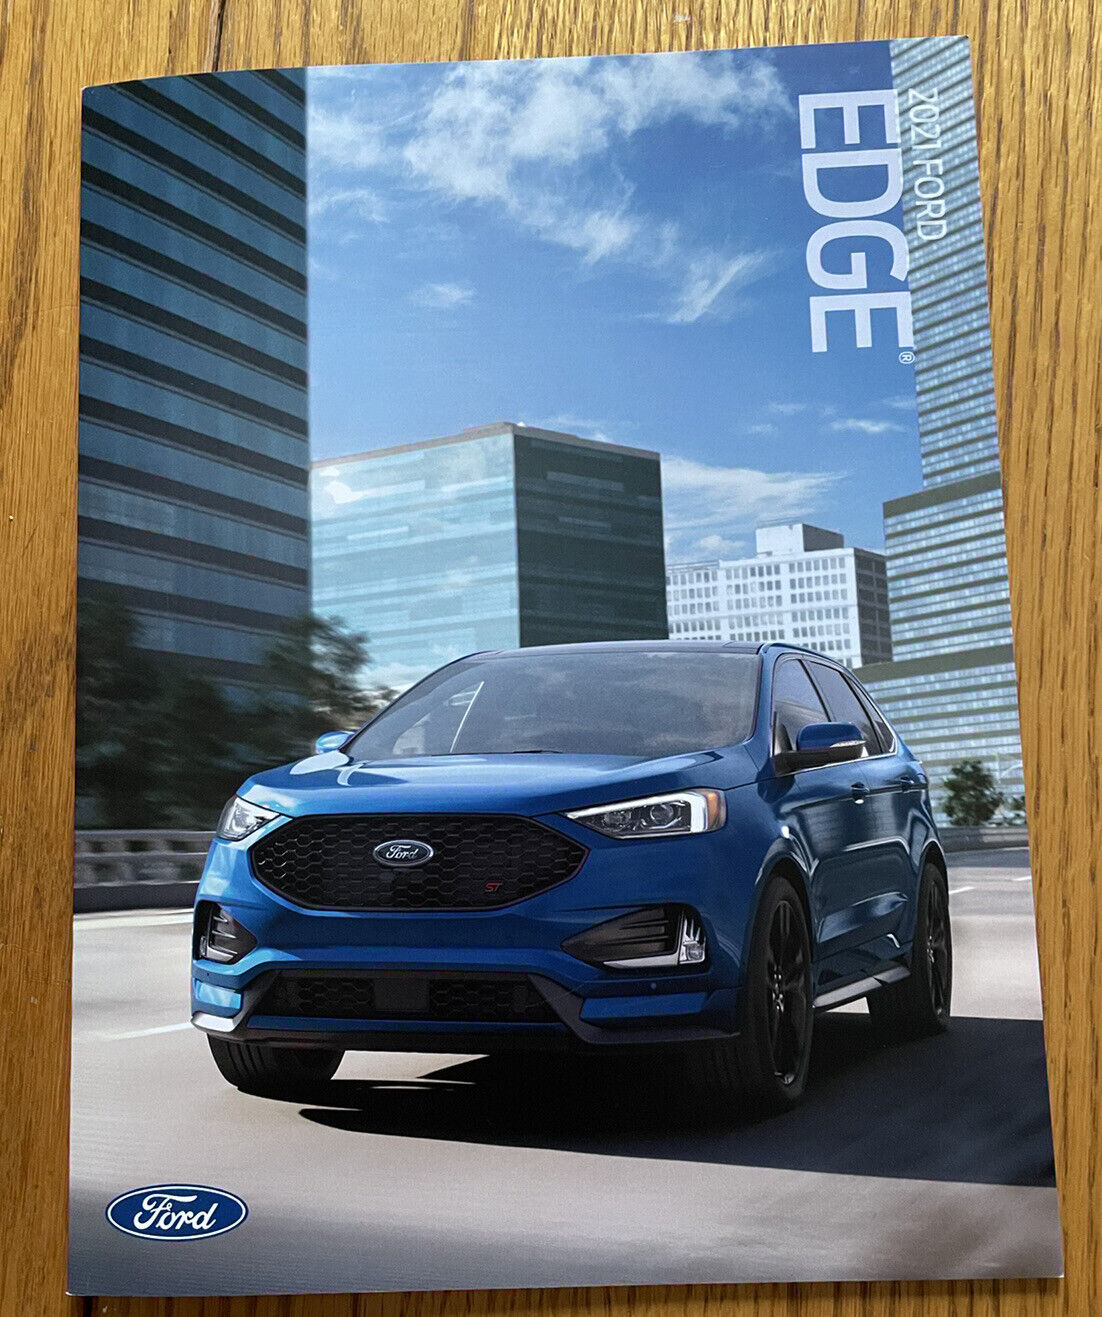 2021 Ford Edge Brochure - Edge Brochures - 2021 Ford Brochures